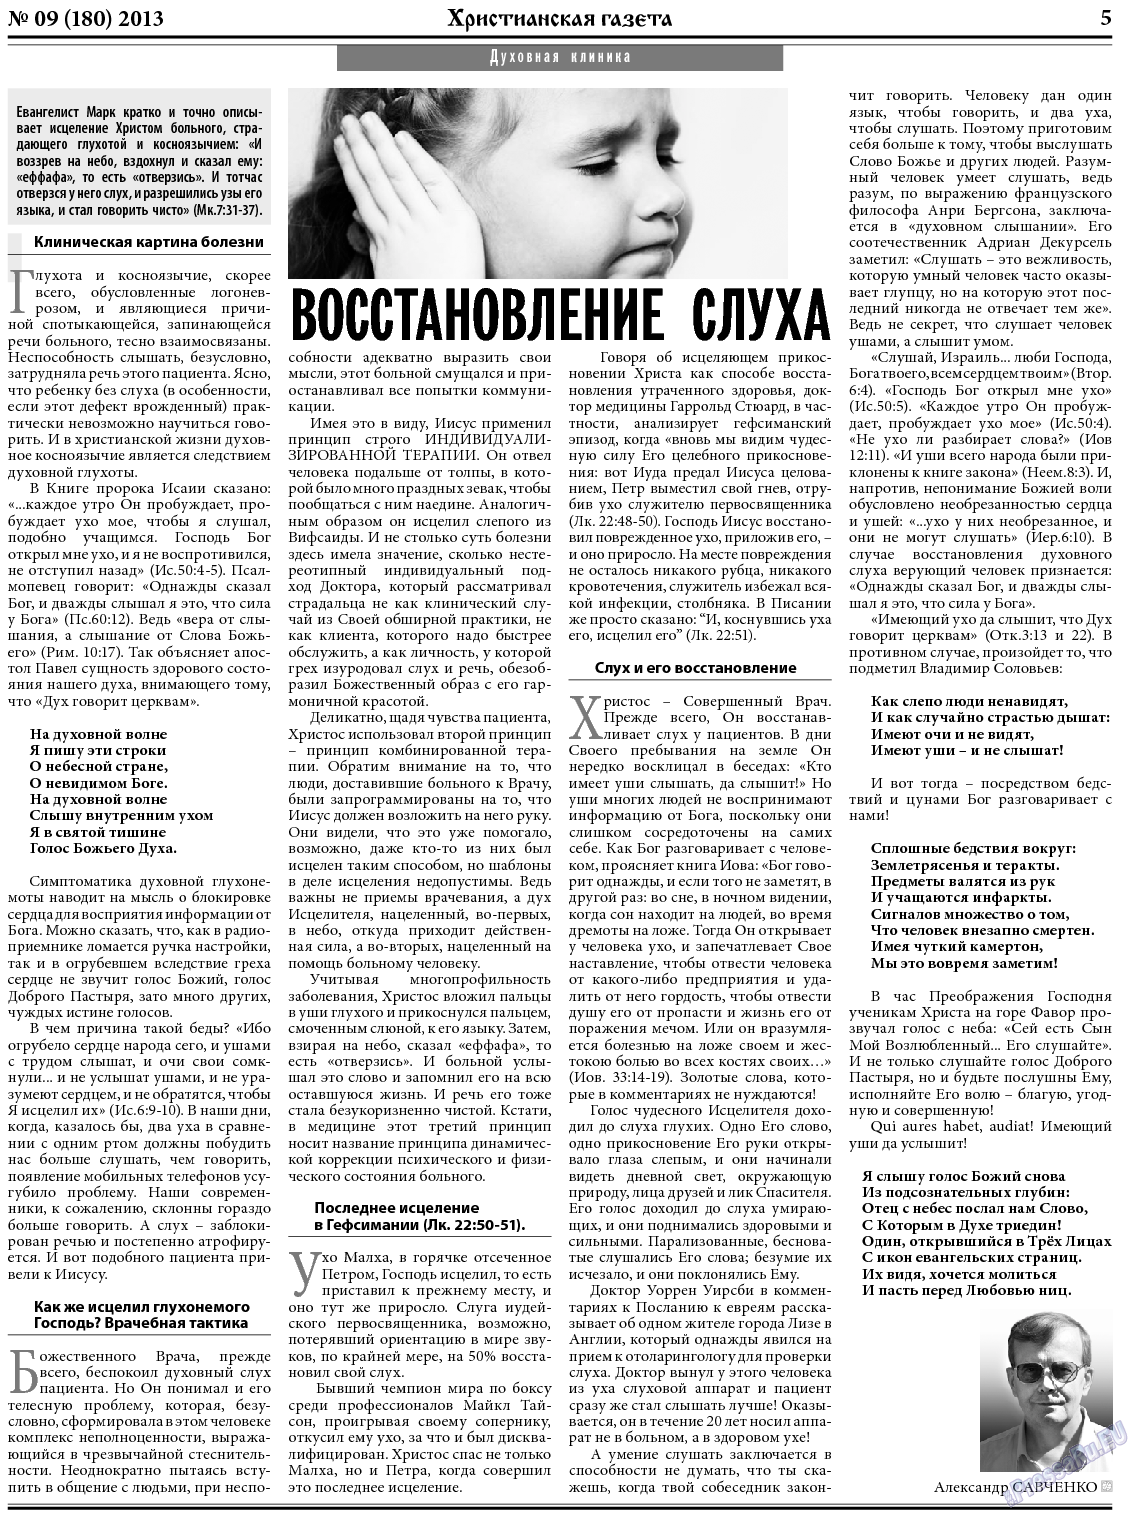 Христианская газета, газета. 2013 №9 стр.5